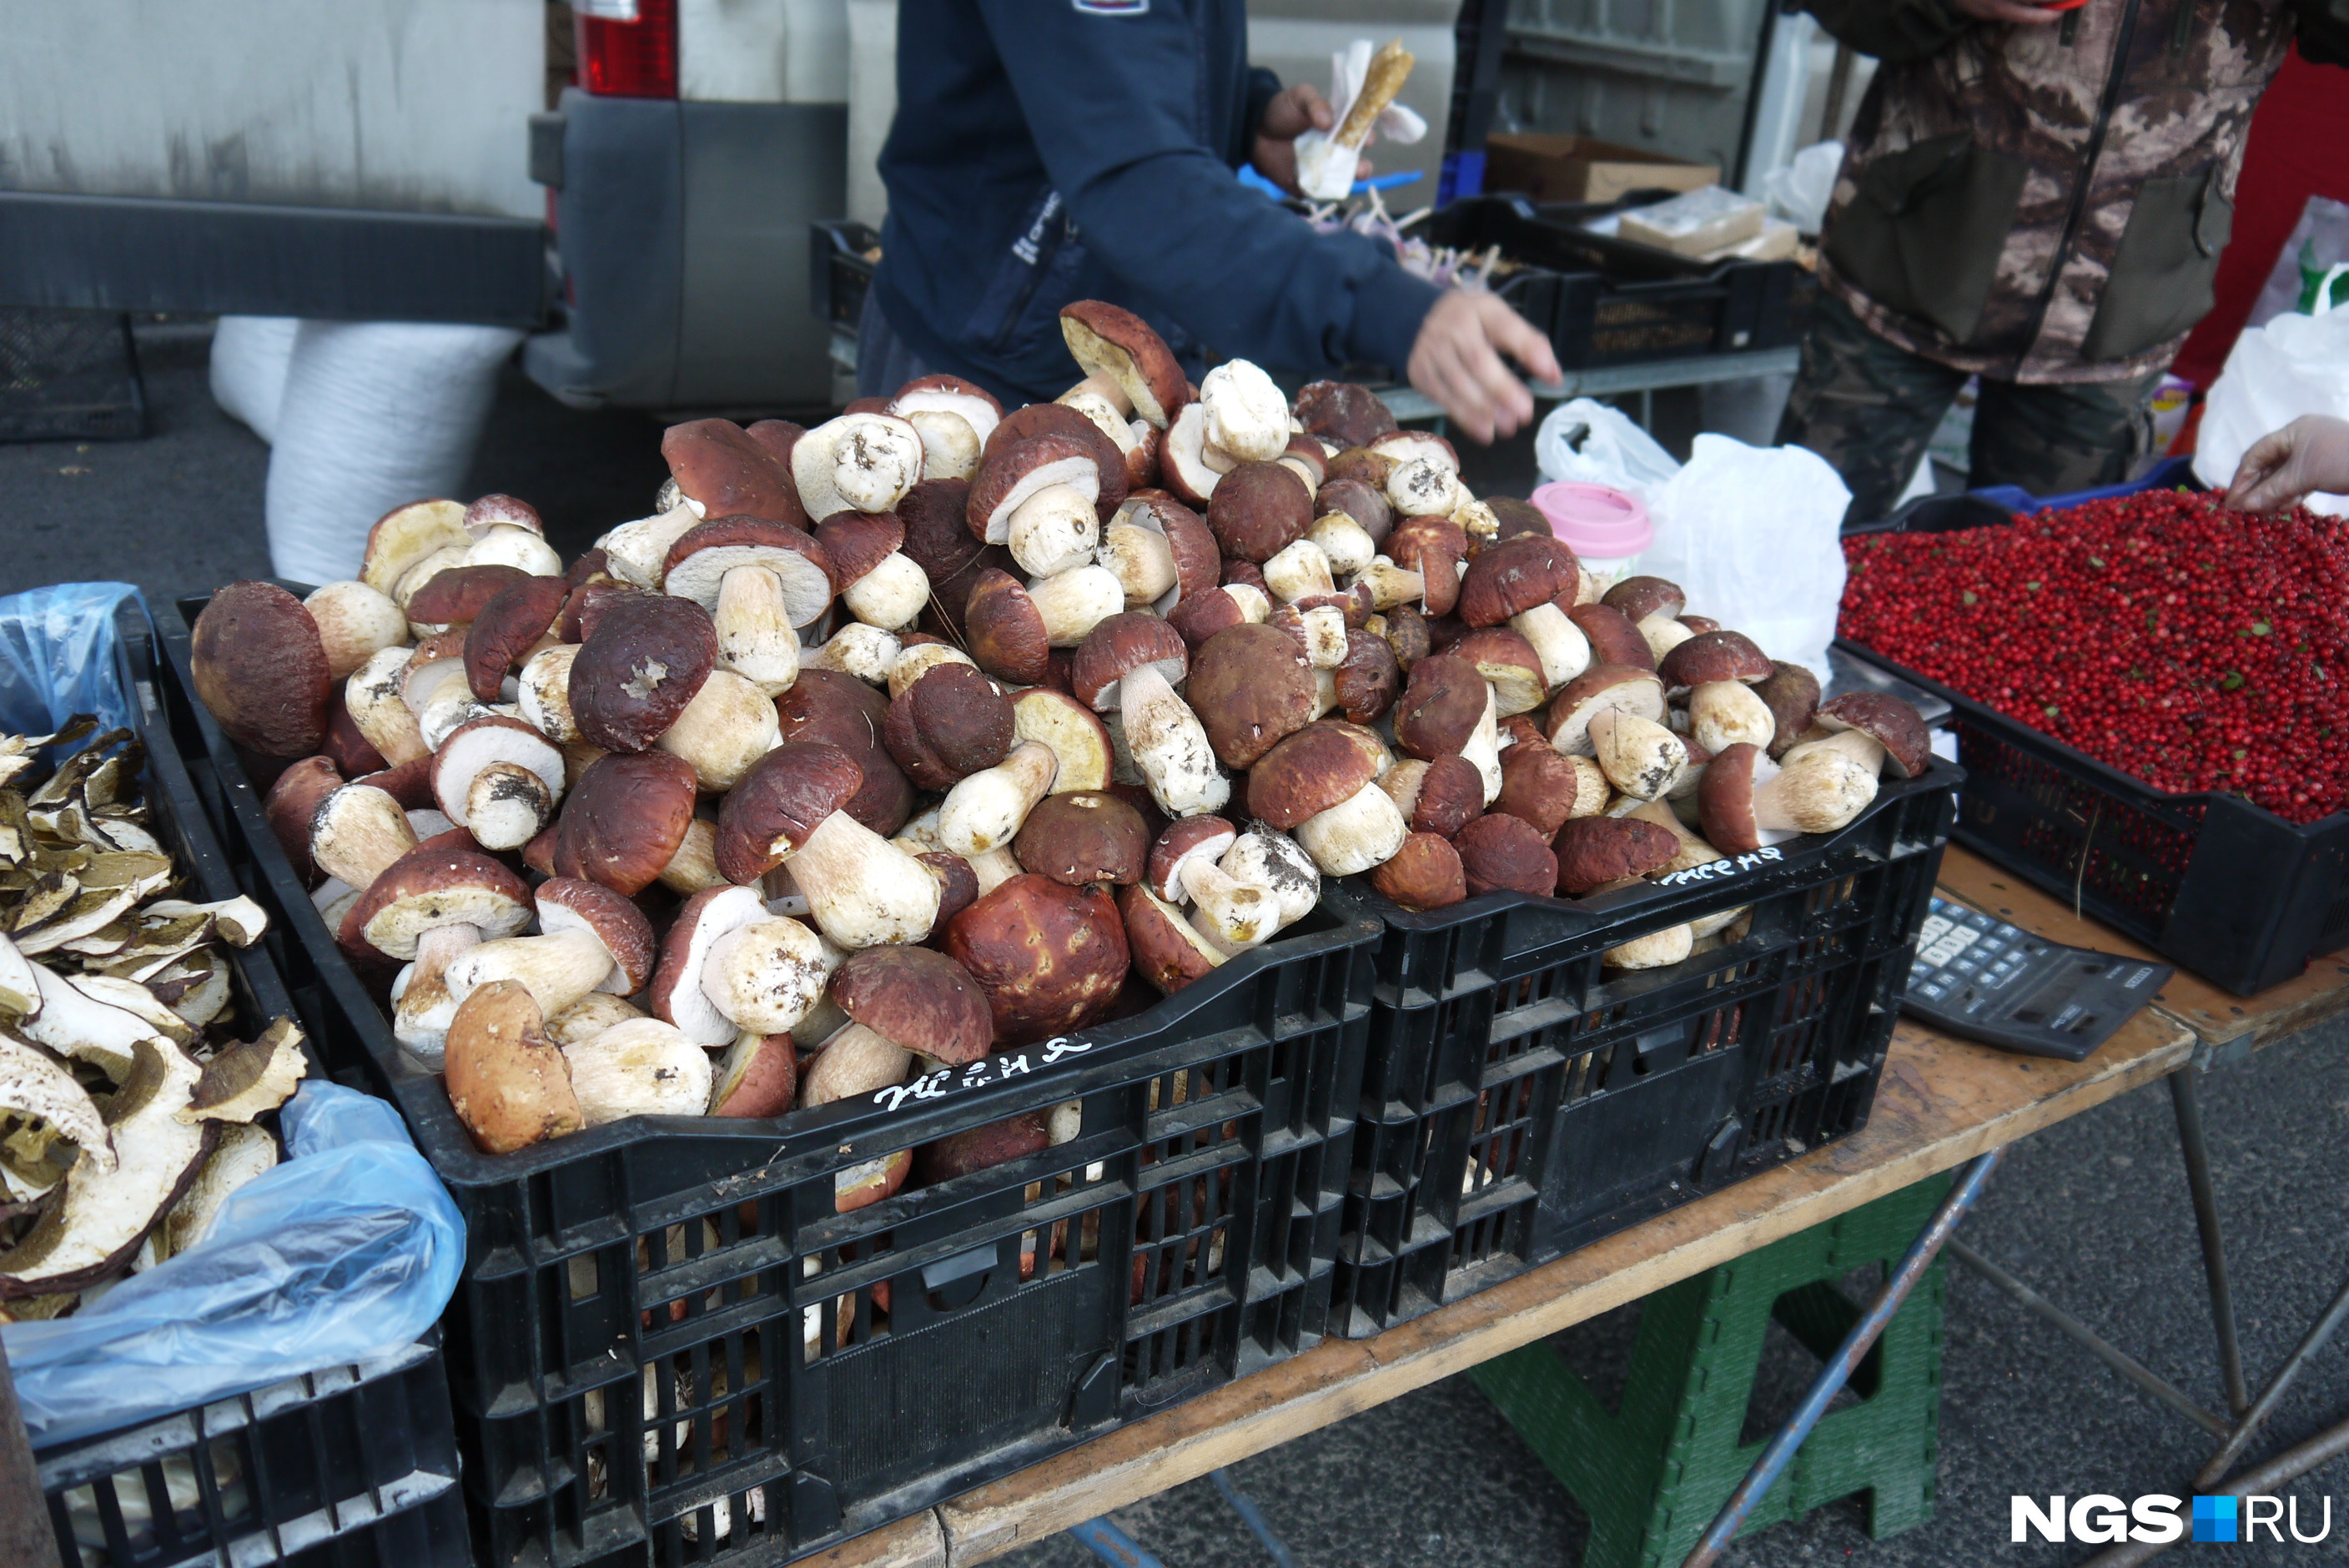 Свежие белые грибы по 600 рублей за килограмм